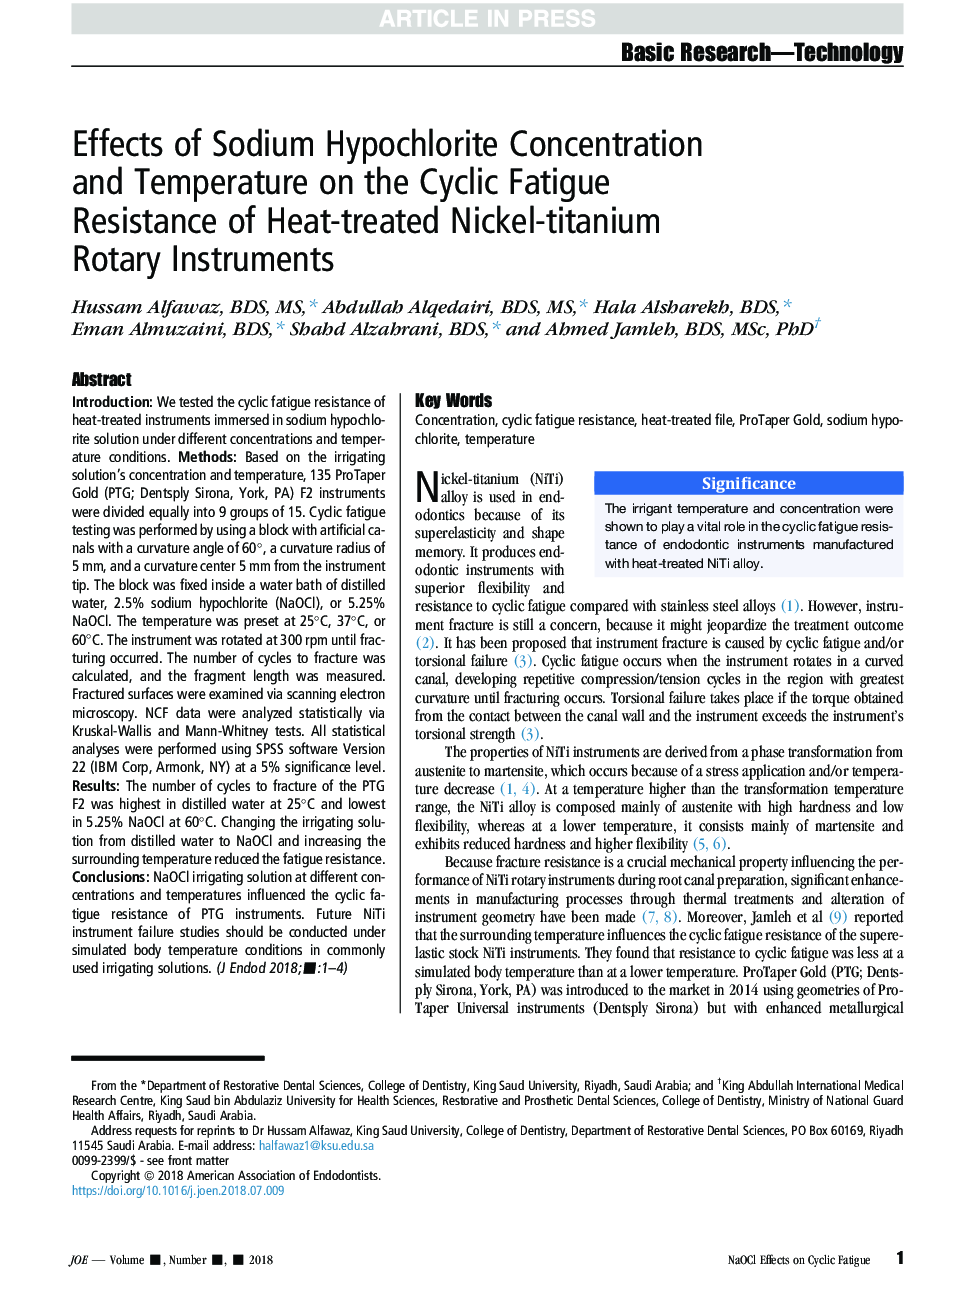 اثرات غلظت و دمای هیپوکلریت سدیم بر مقاومت به خستگی سیکل ابزارهای روتاری نیکل تیتانیوم